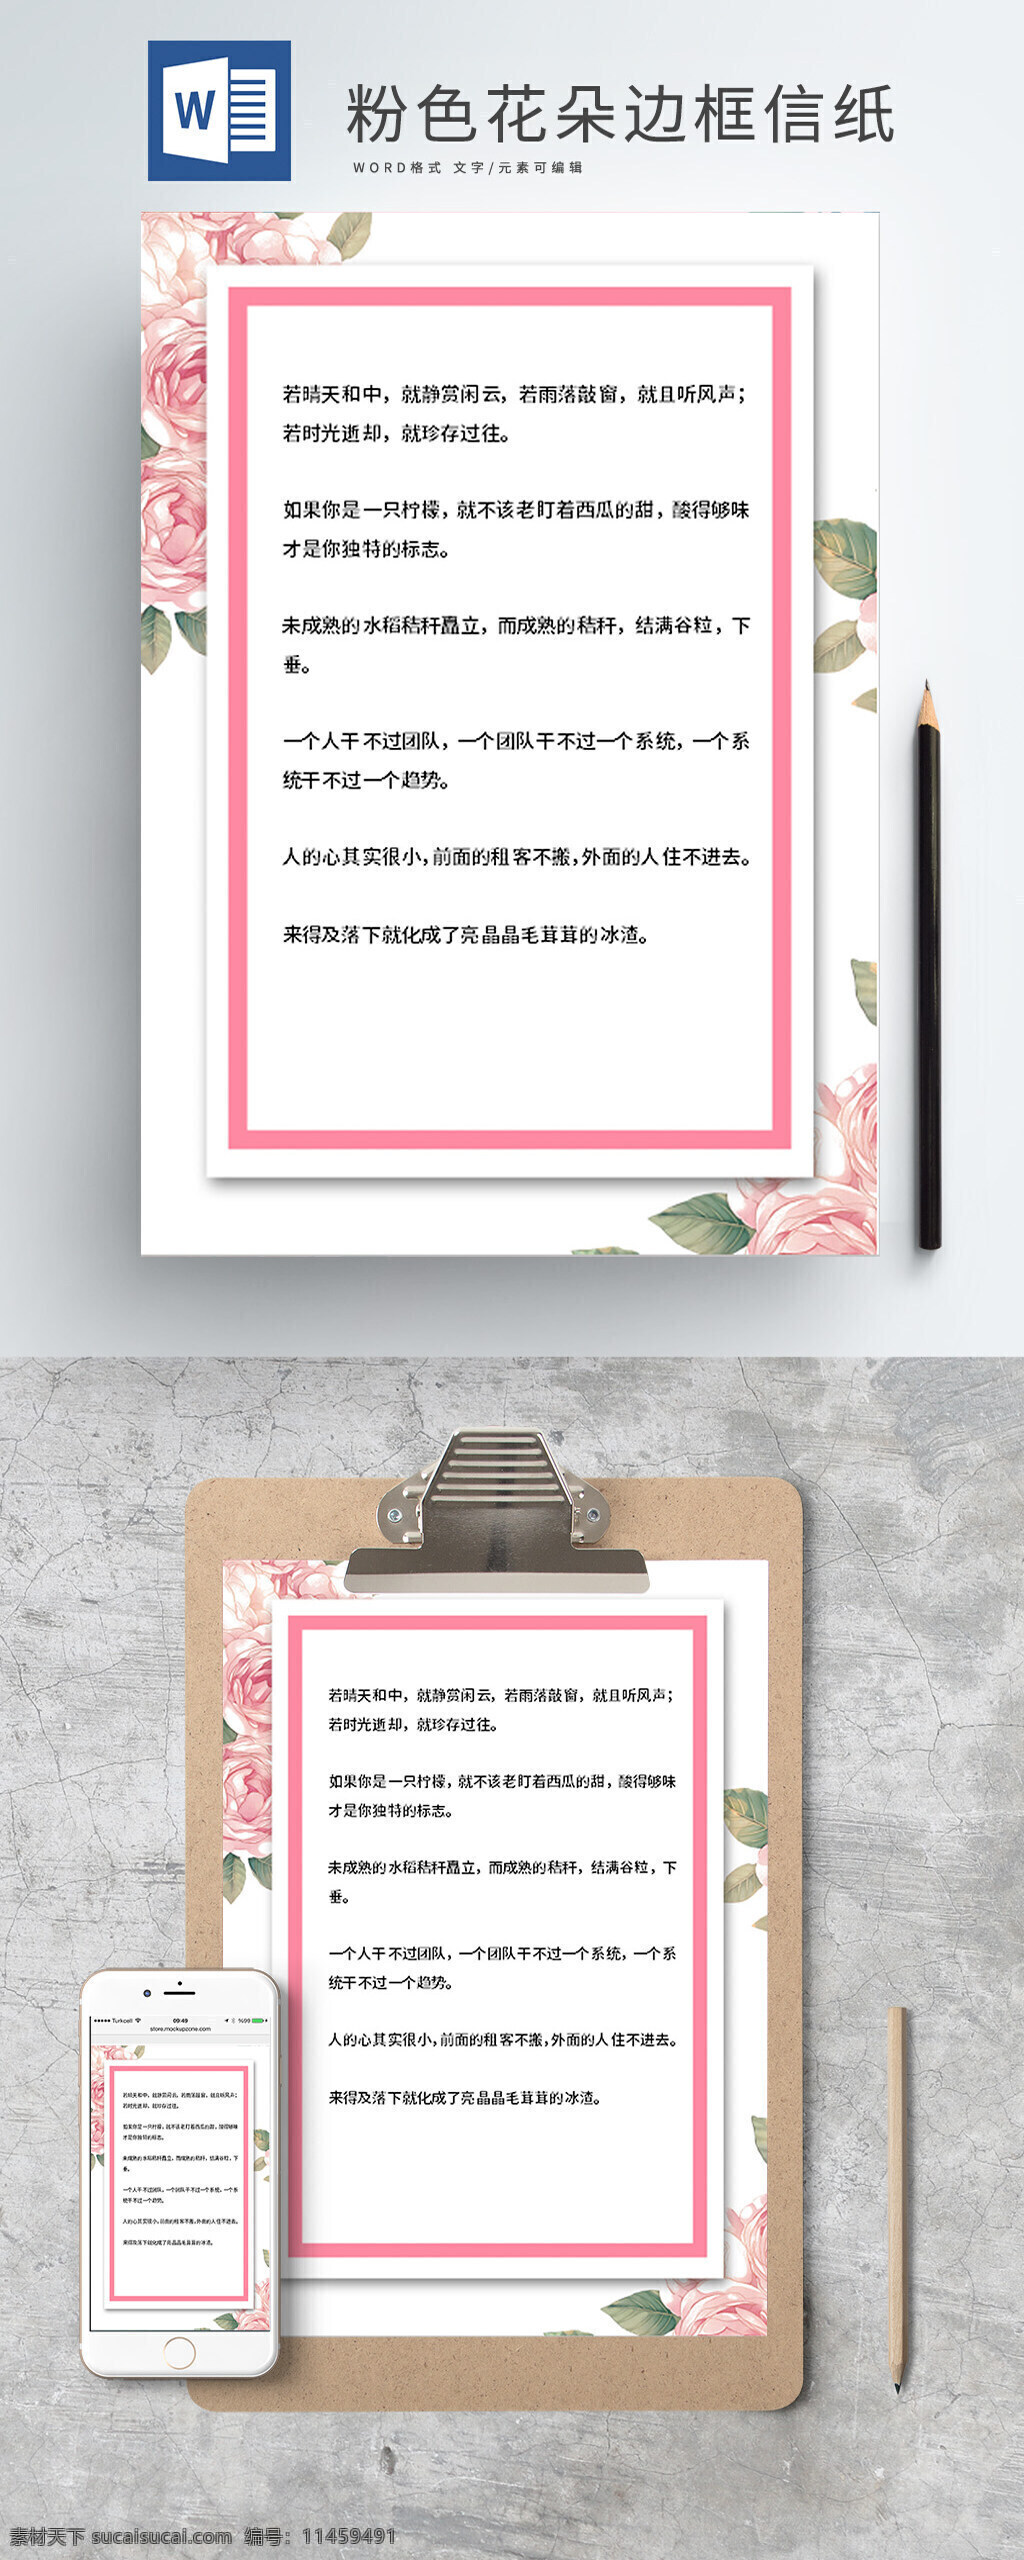 粉色 花朵 边框 信纸 粉色信纸 粉色边框信纸 粉色花朵信纸